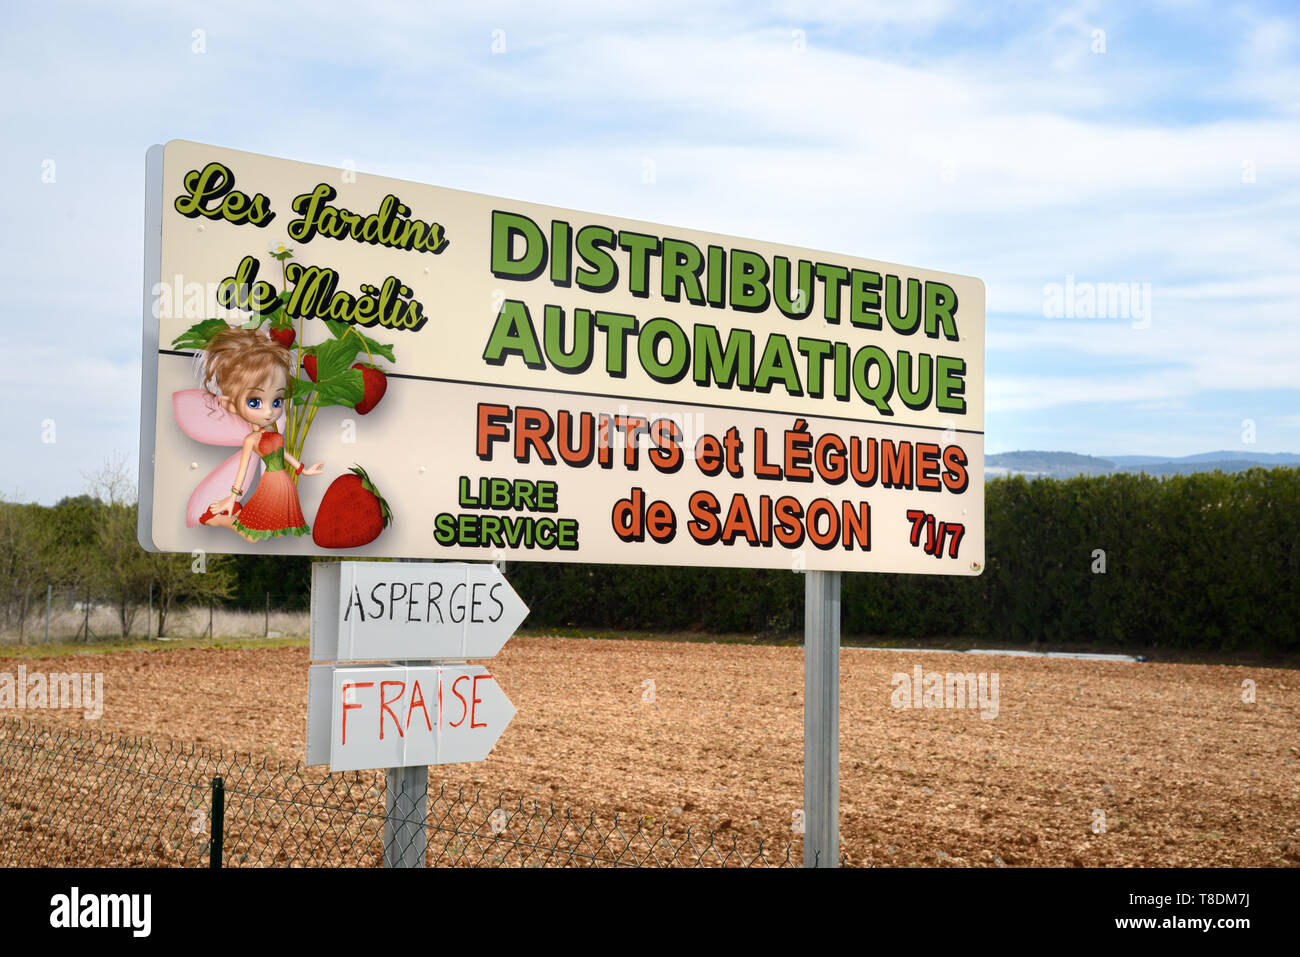 Signe de la route pour accéder au service des fruits et légumes ou distributeur automatique Distributeur Automatique de Charme Bonnieux Luberon Provence France Banque D'Images